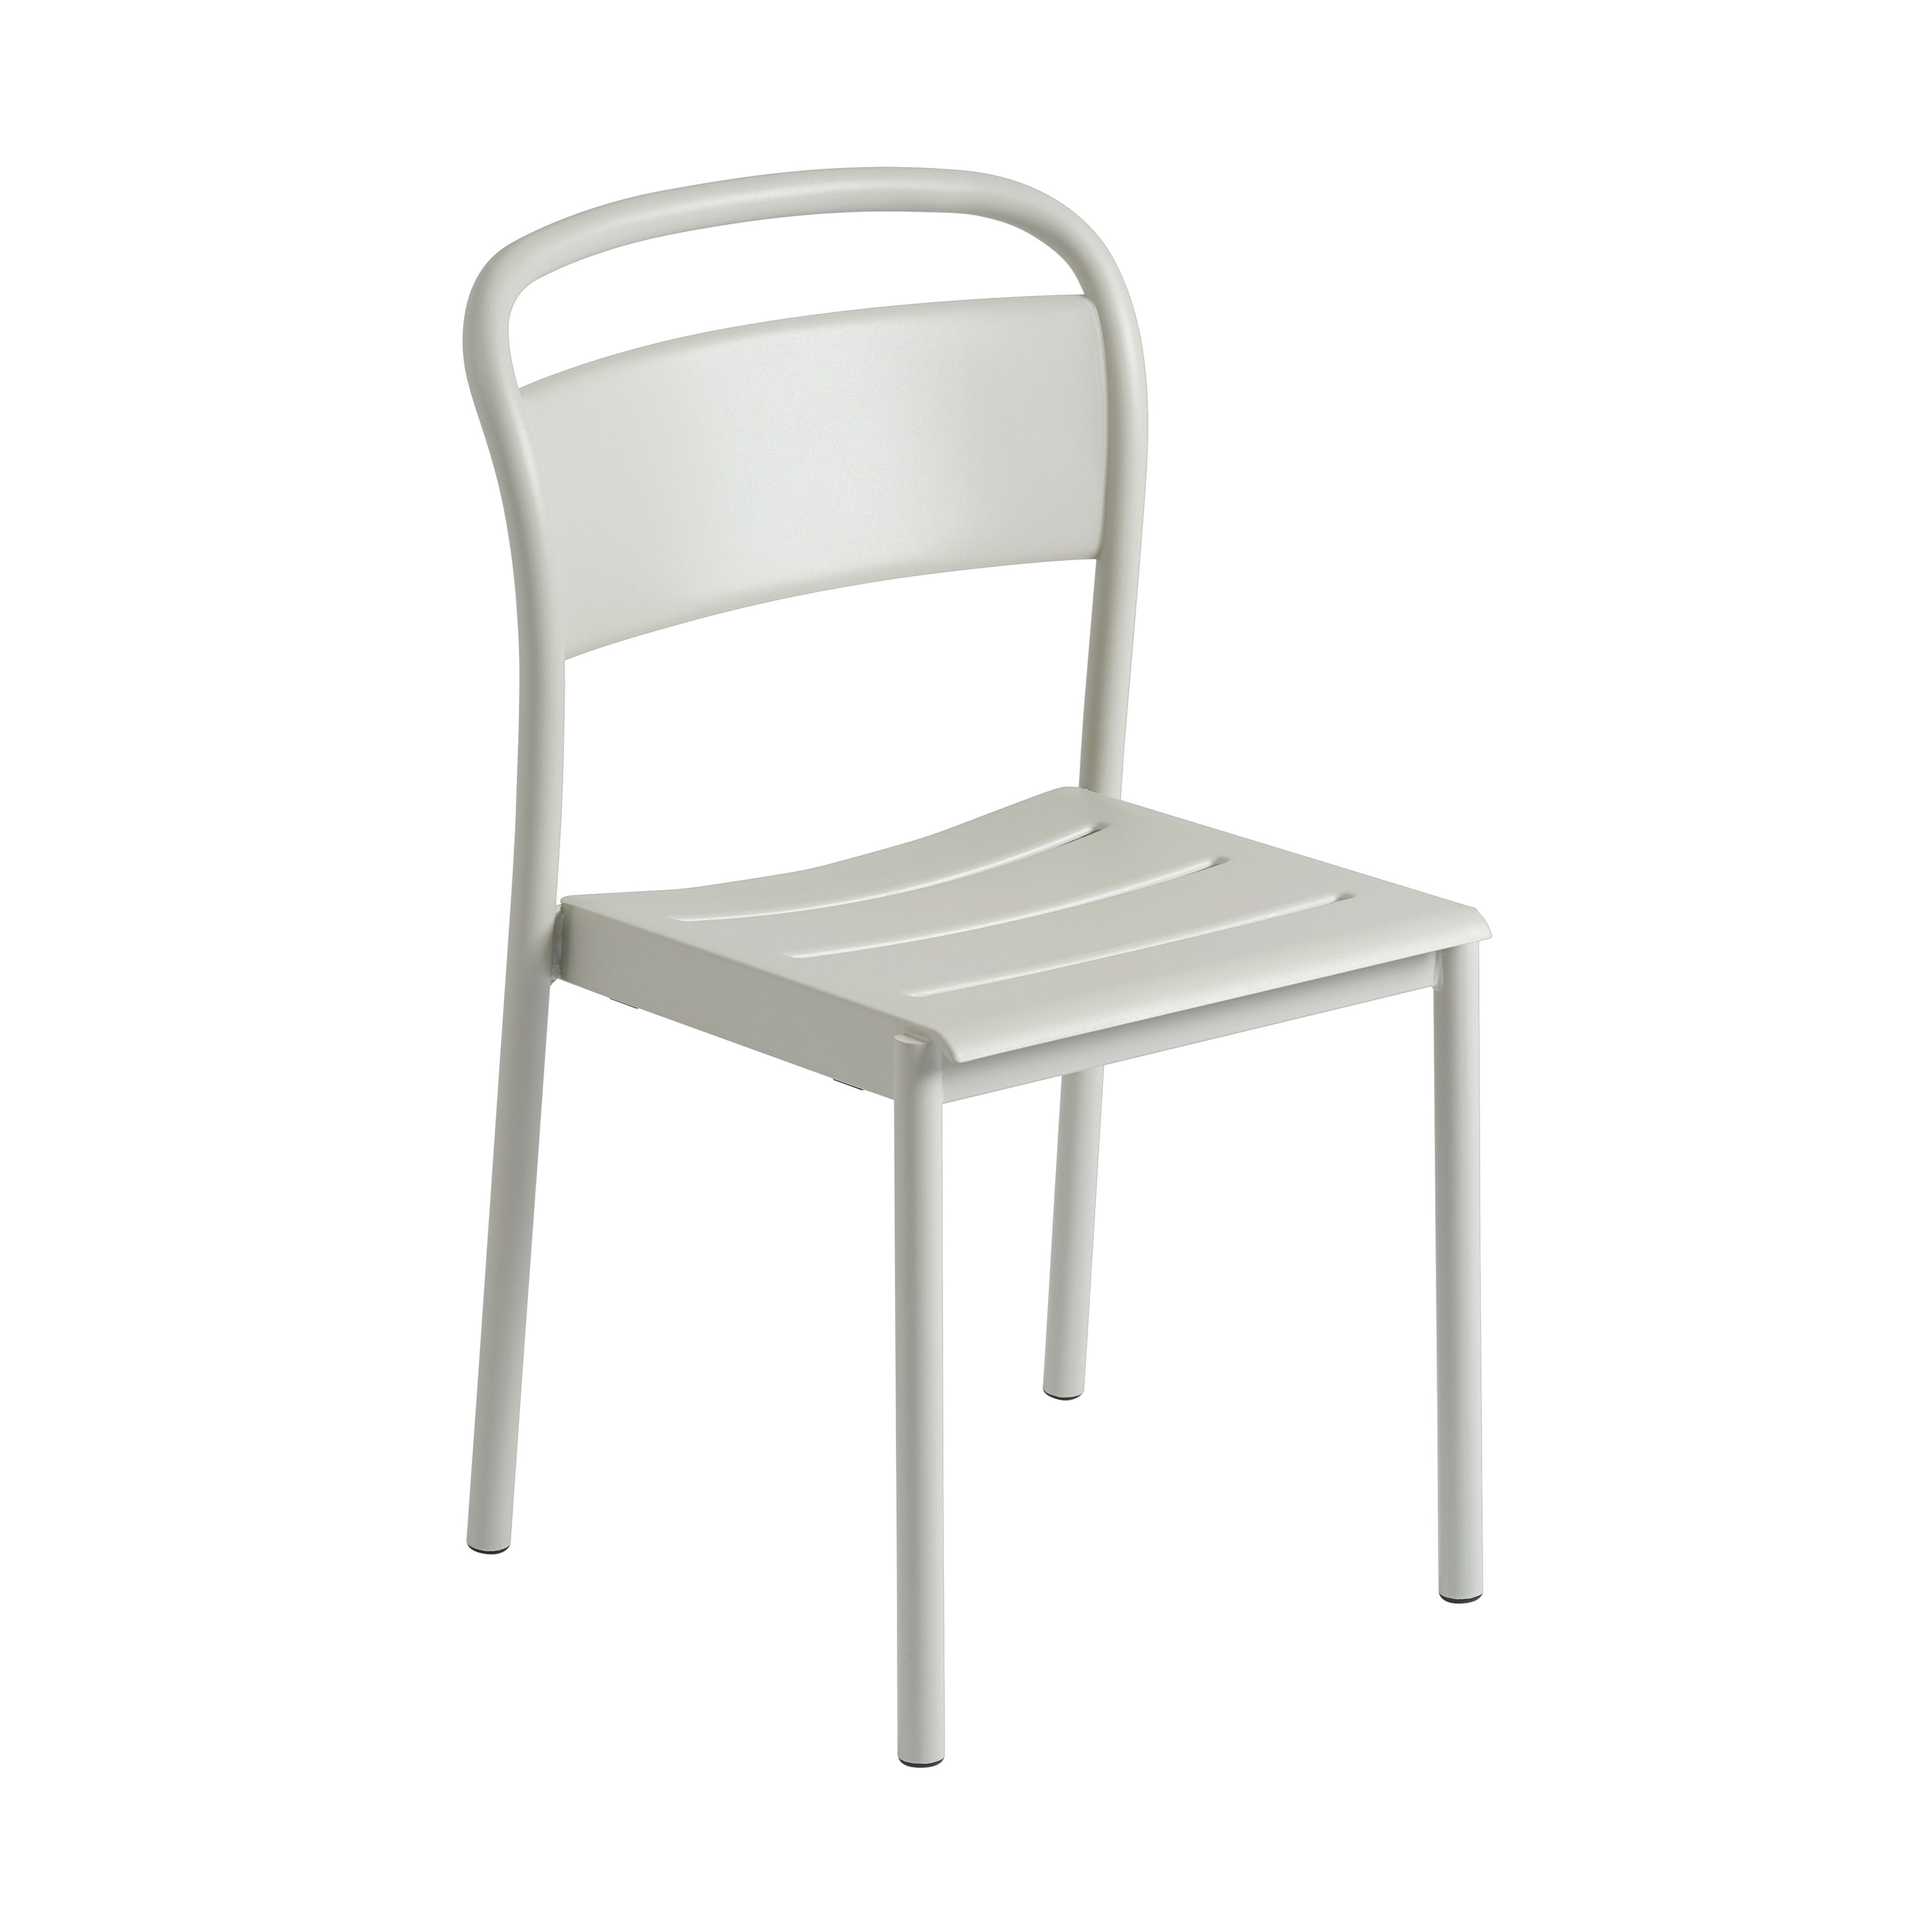 Linear Steel Side Chair: Grey